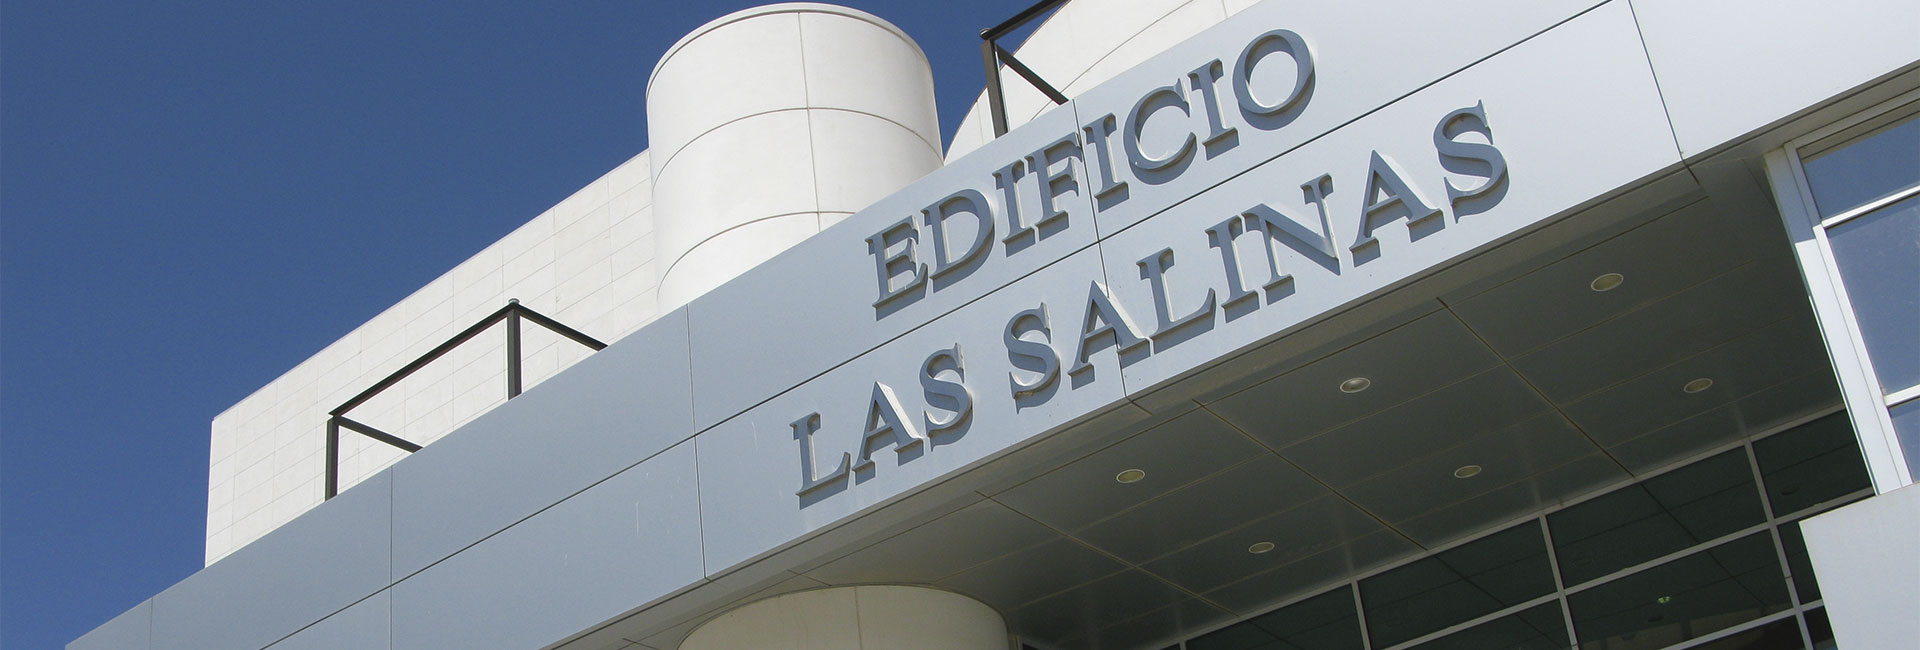 Edificio Las Salinas